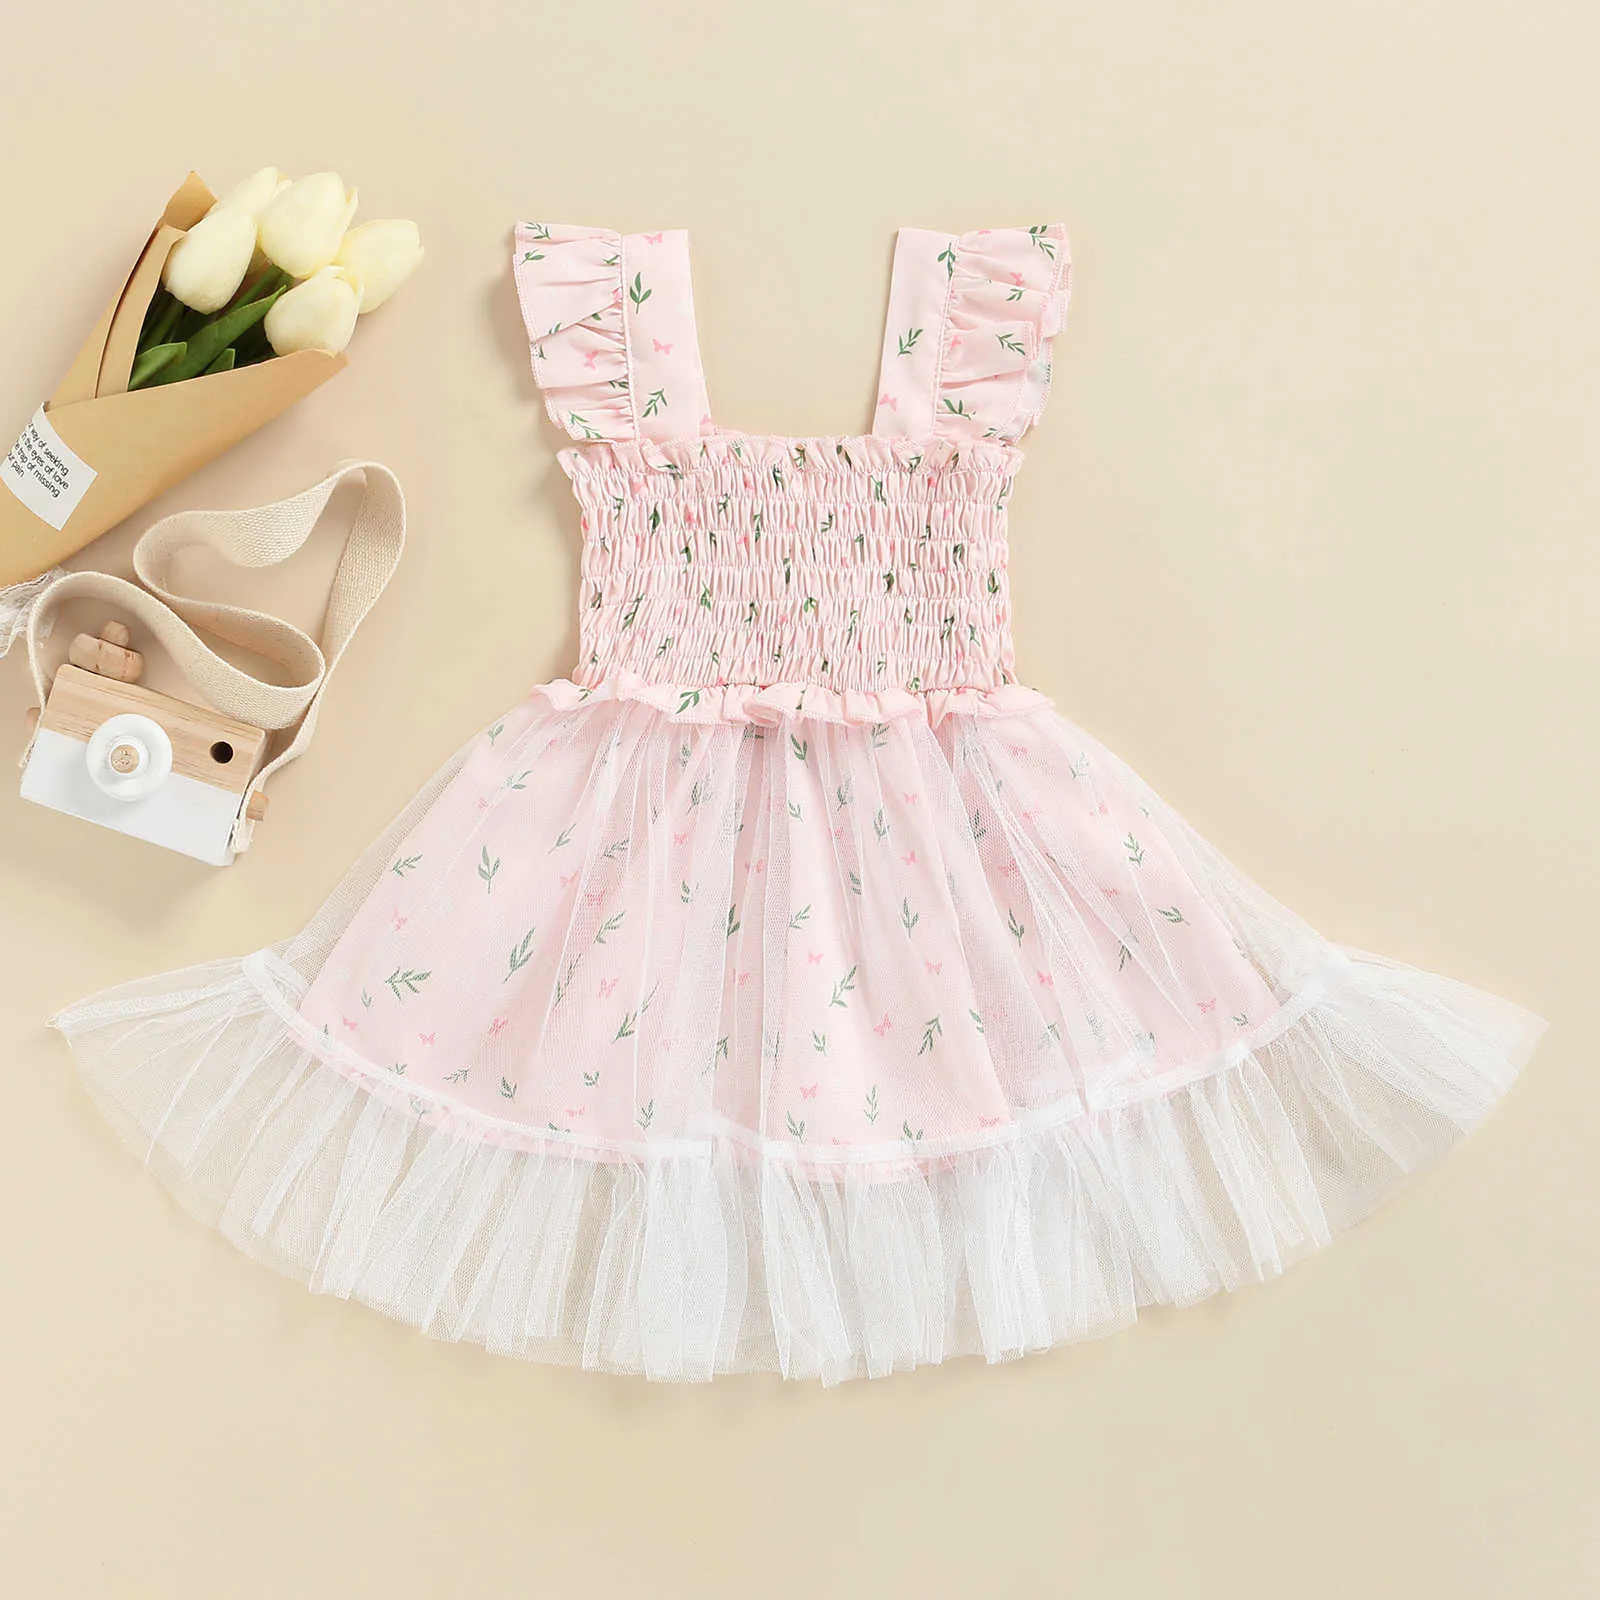 女の子のドレスmaベイビー6m-3年幼児新生幼児の女の女の子ドレスノースリーブレースレースフラワープリントドレス夏の衣装